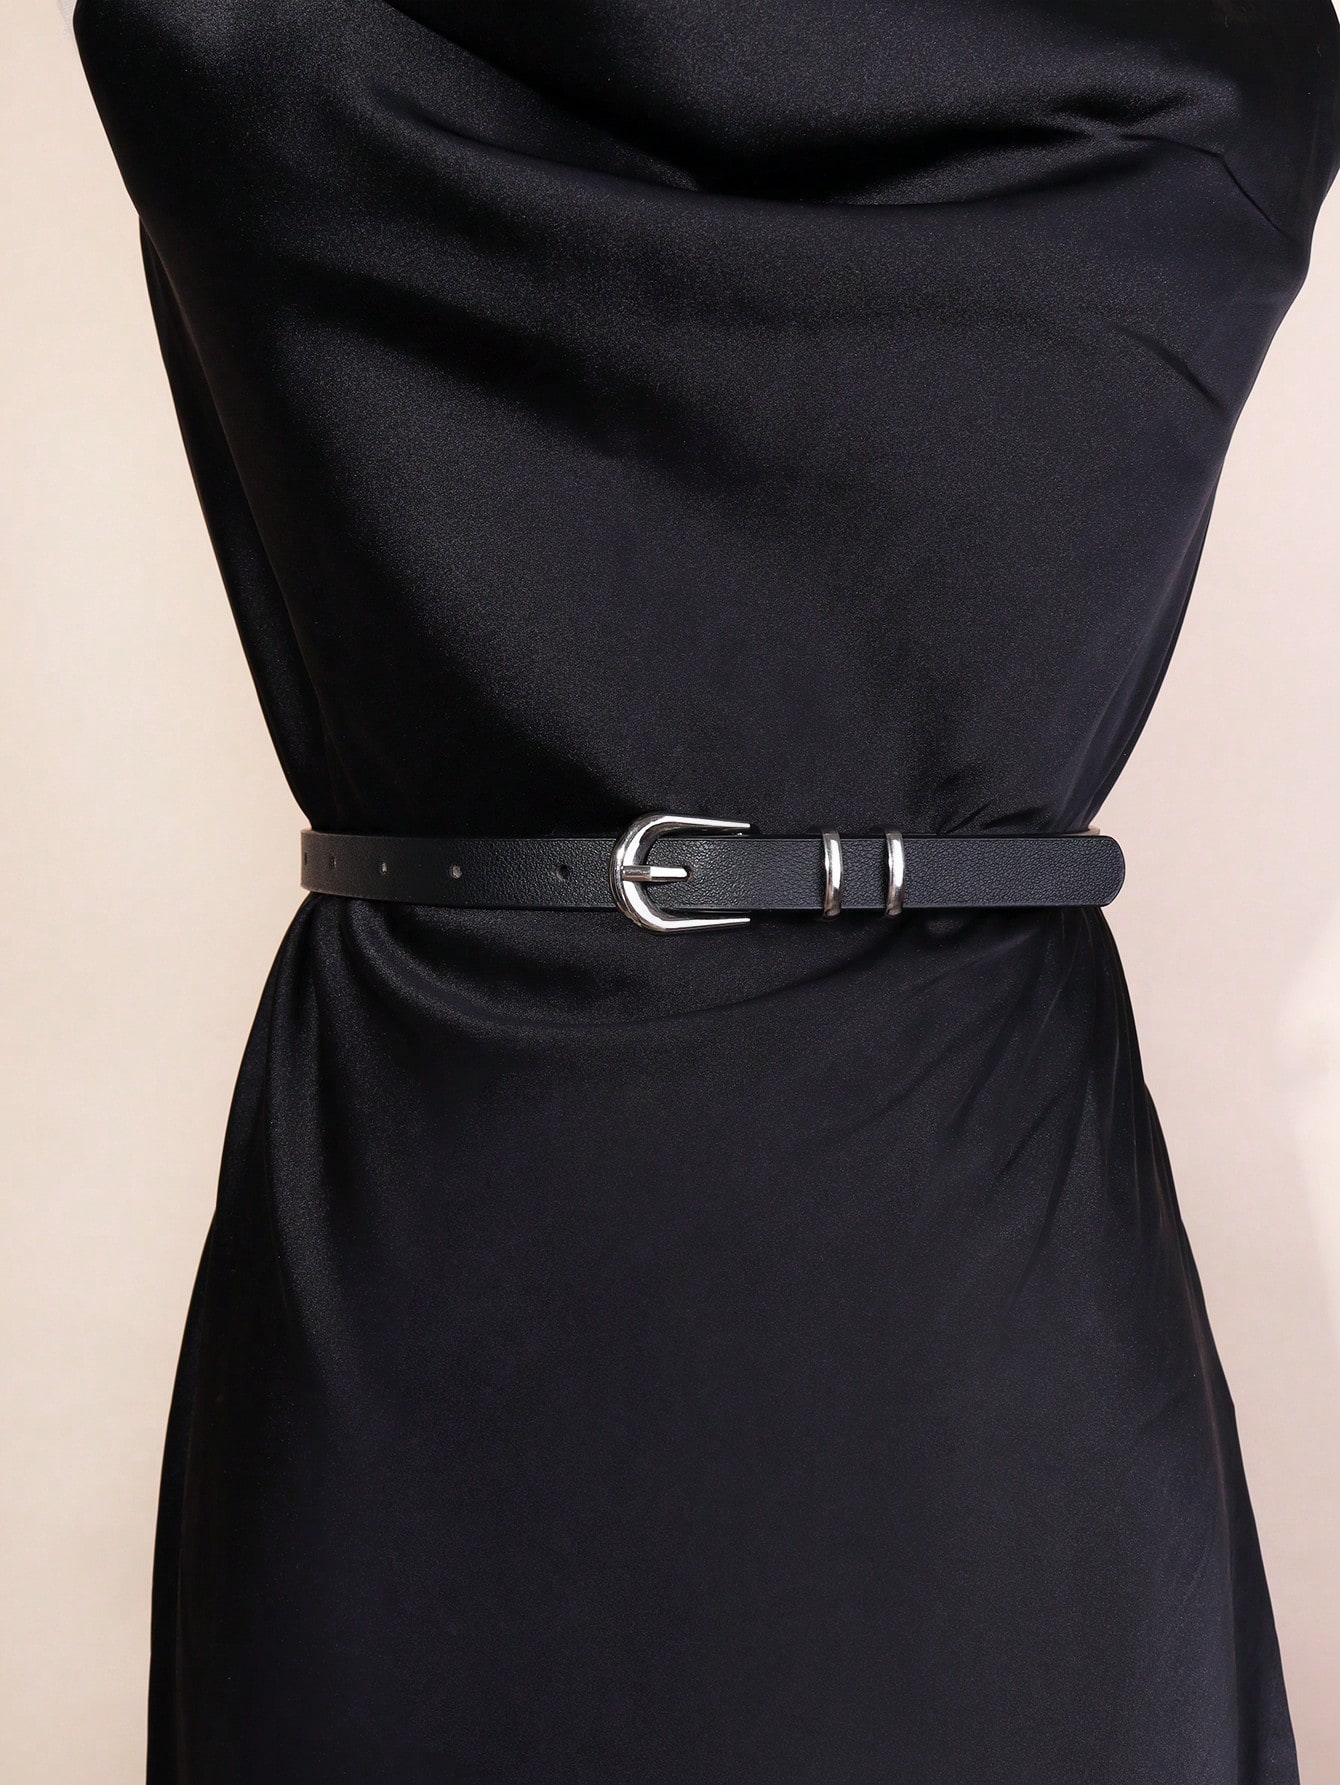 1шт женский простой и универсальный женский тонкий пояс с металлической пряжкой для украшения платья, черный